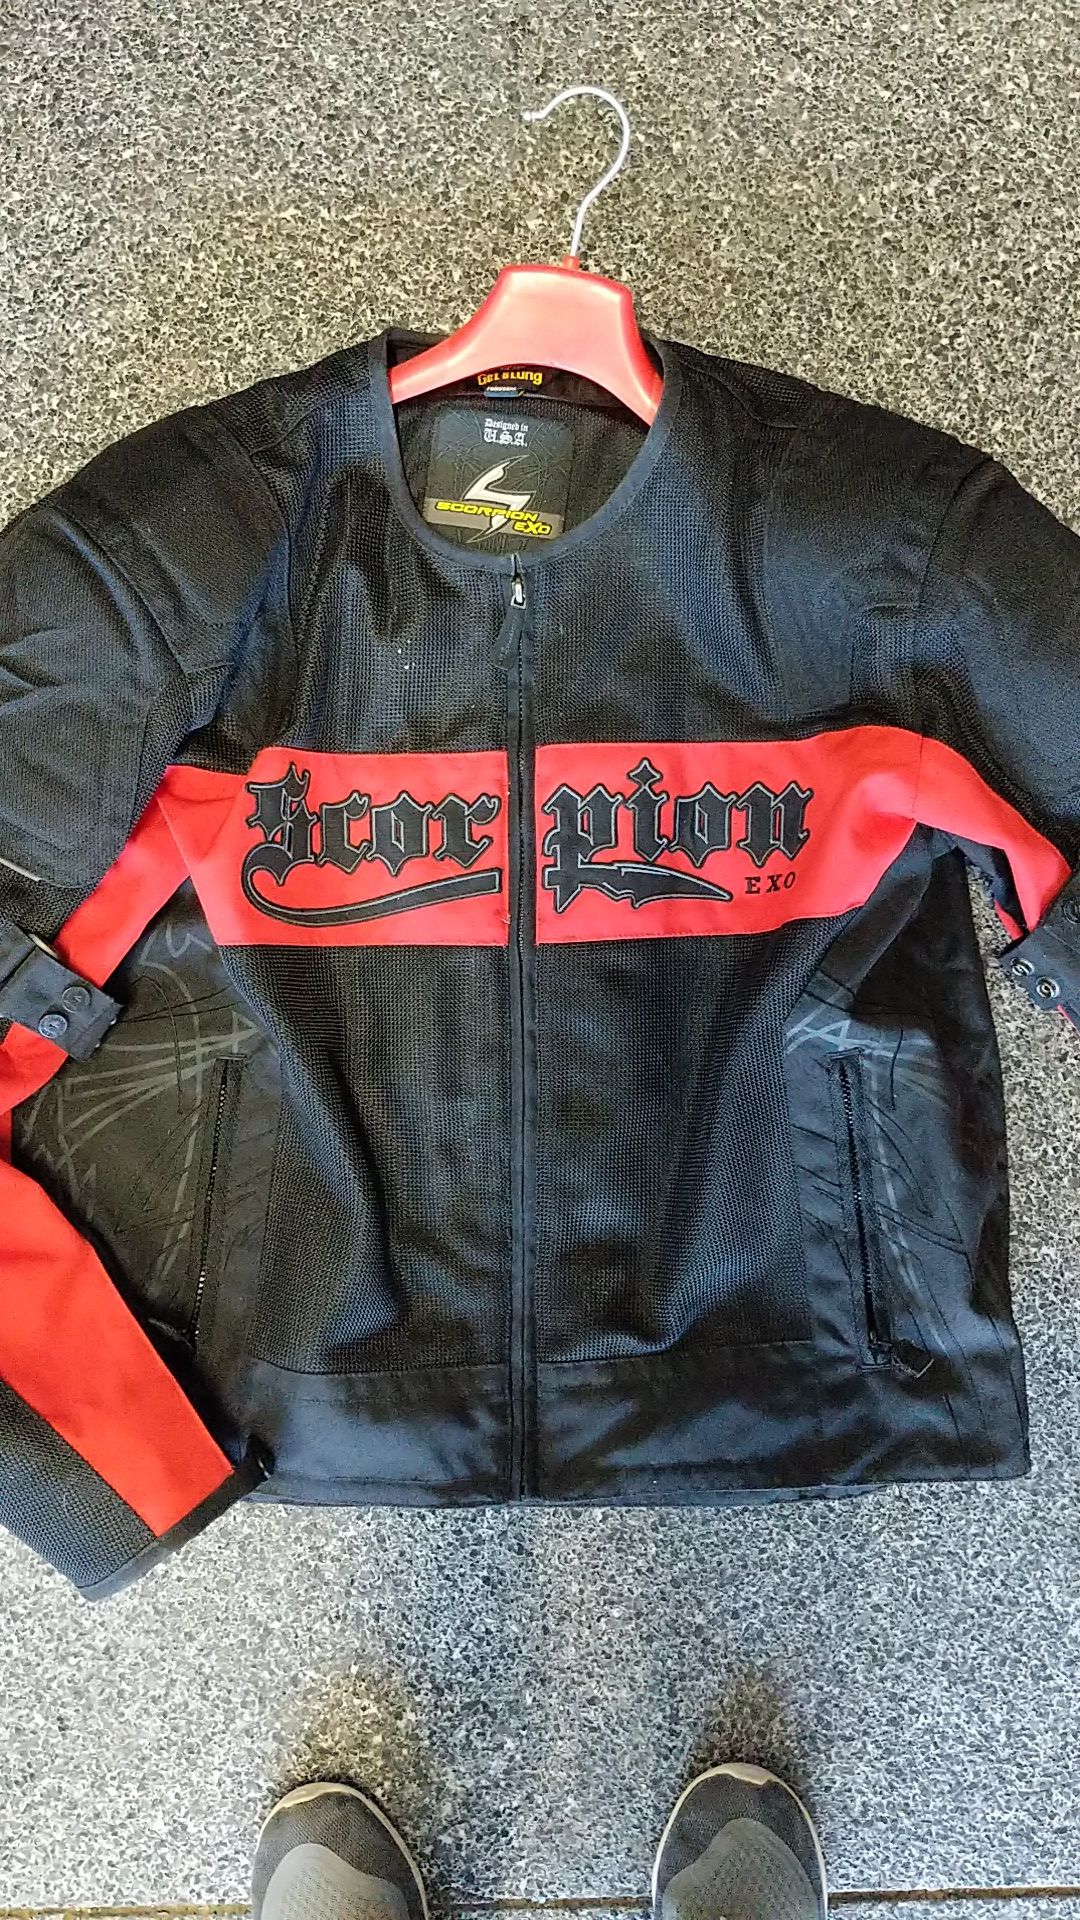 Scorpion exo motorcycle jacket